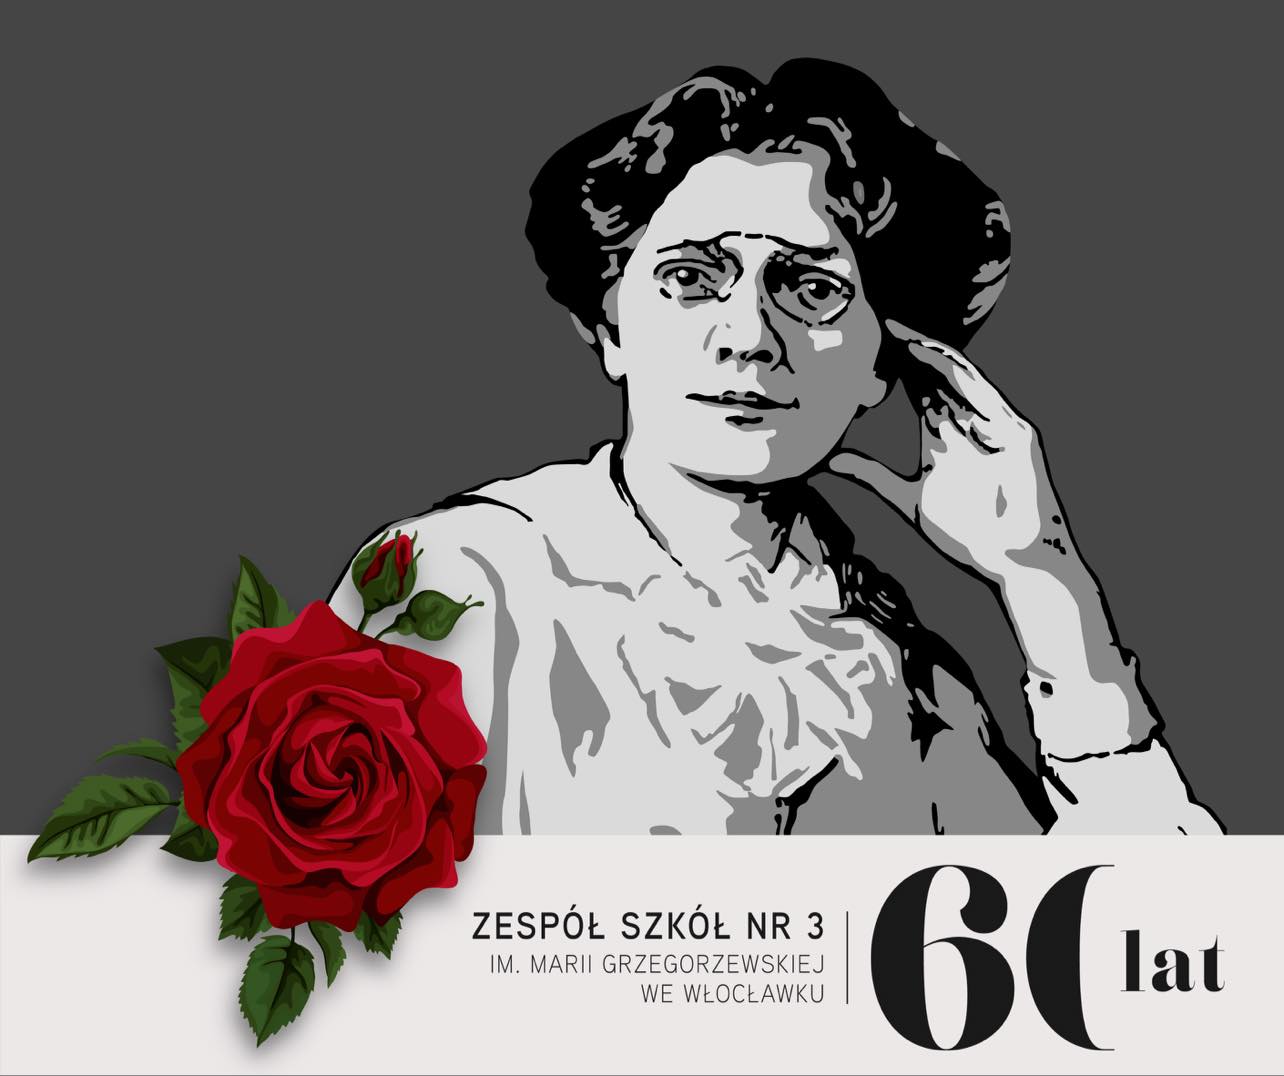 Portret Marii Grzegorzewskiej z motywami sześćdziesięciolecia ZS3